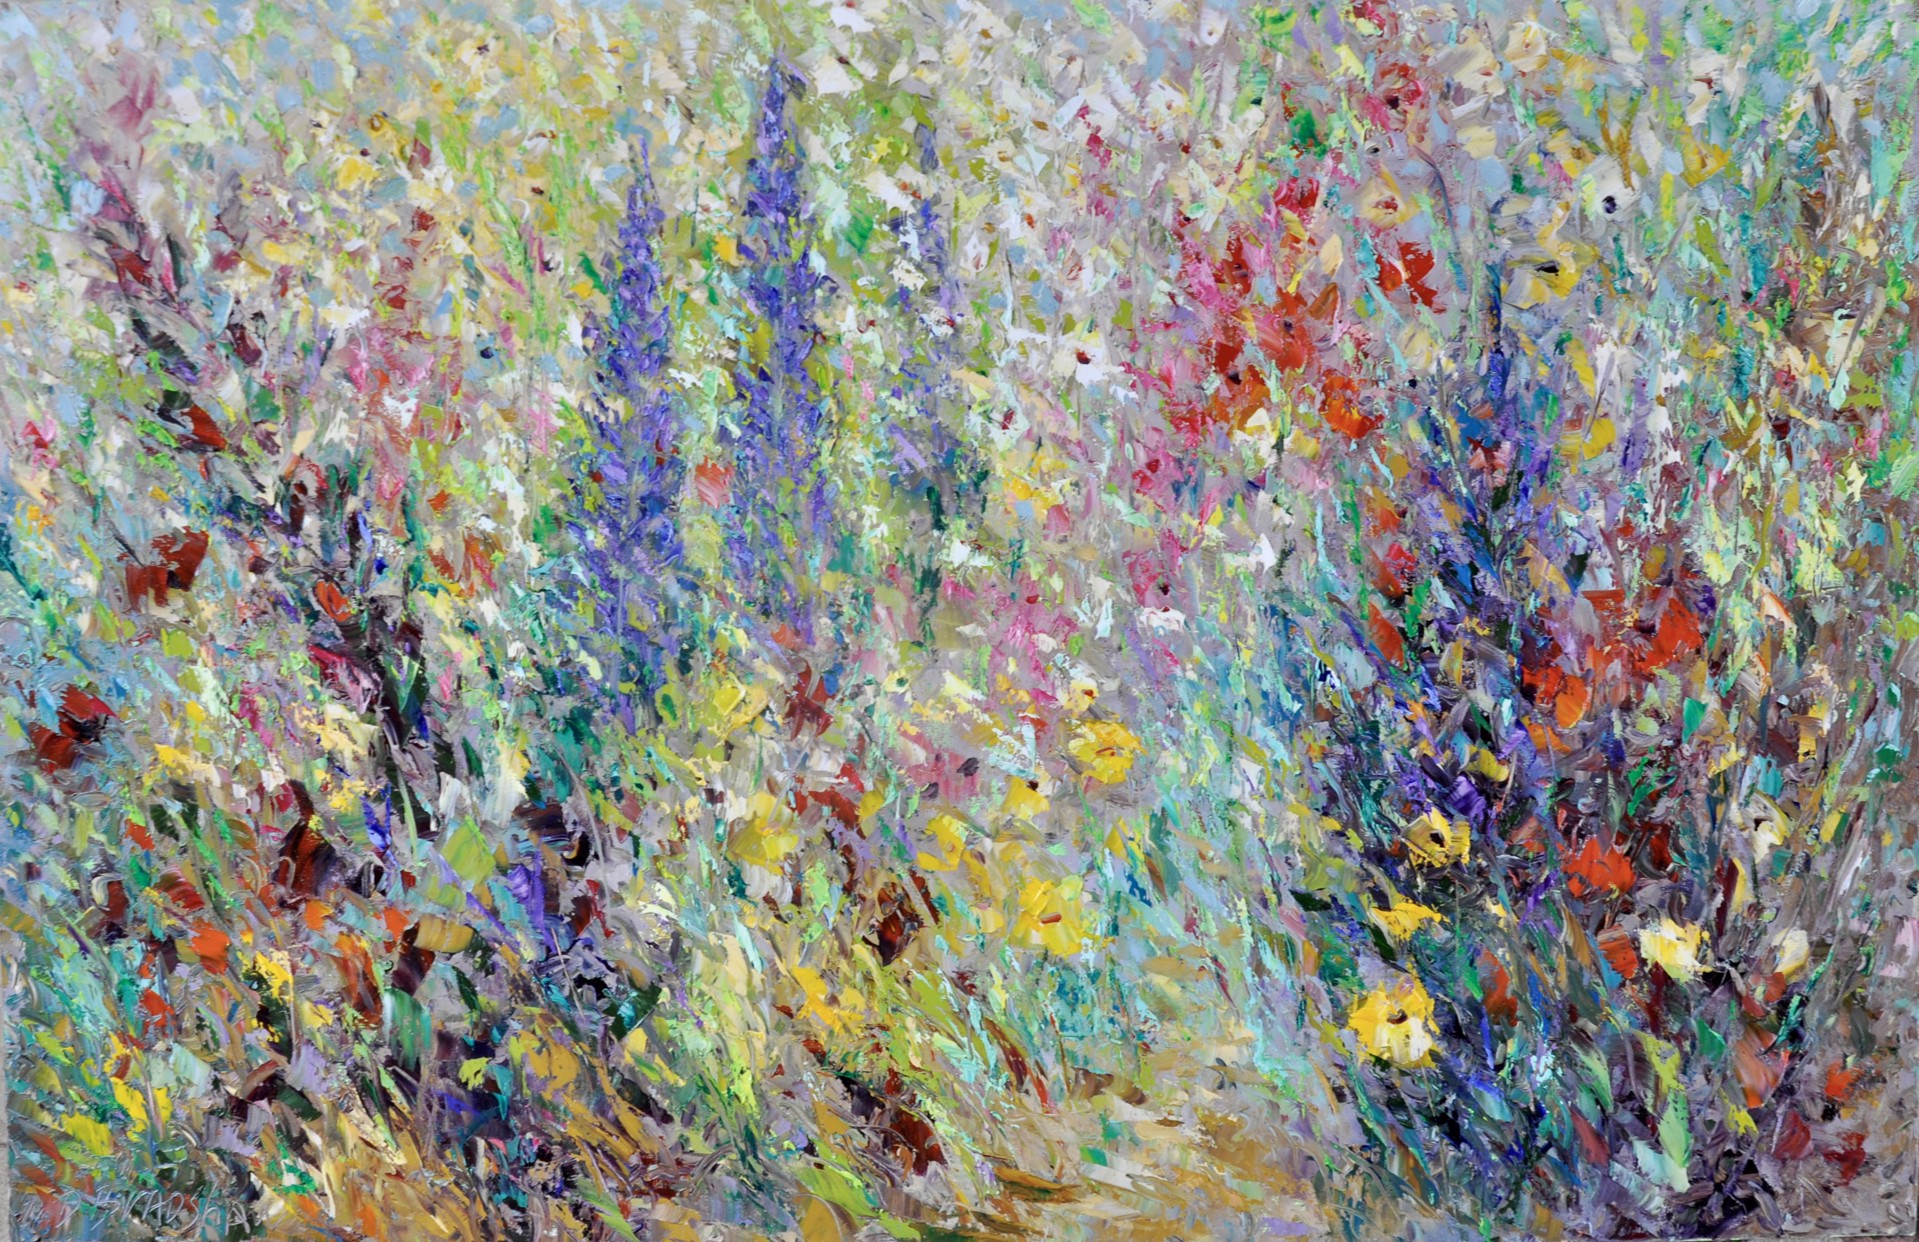 Heavenly Flowers by Dean Bradshaw